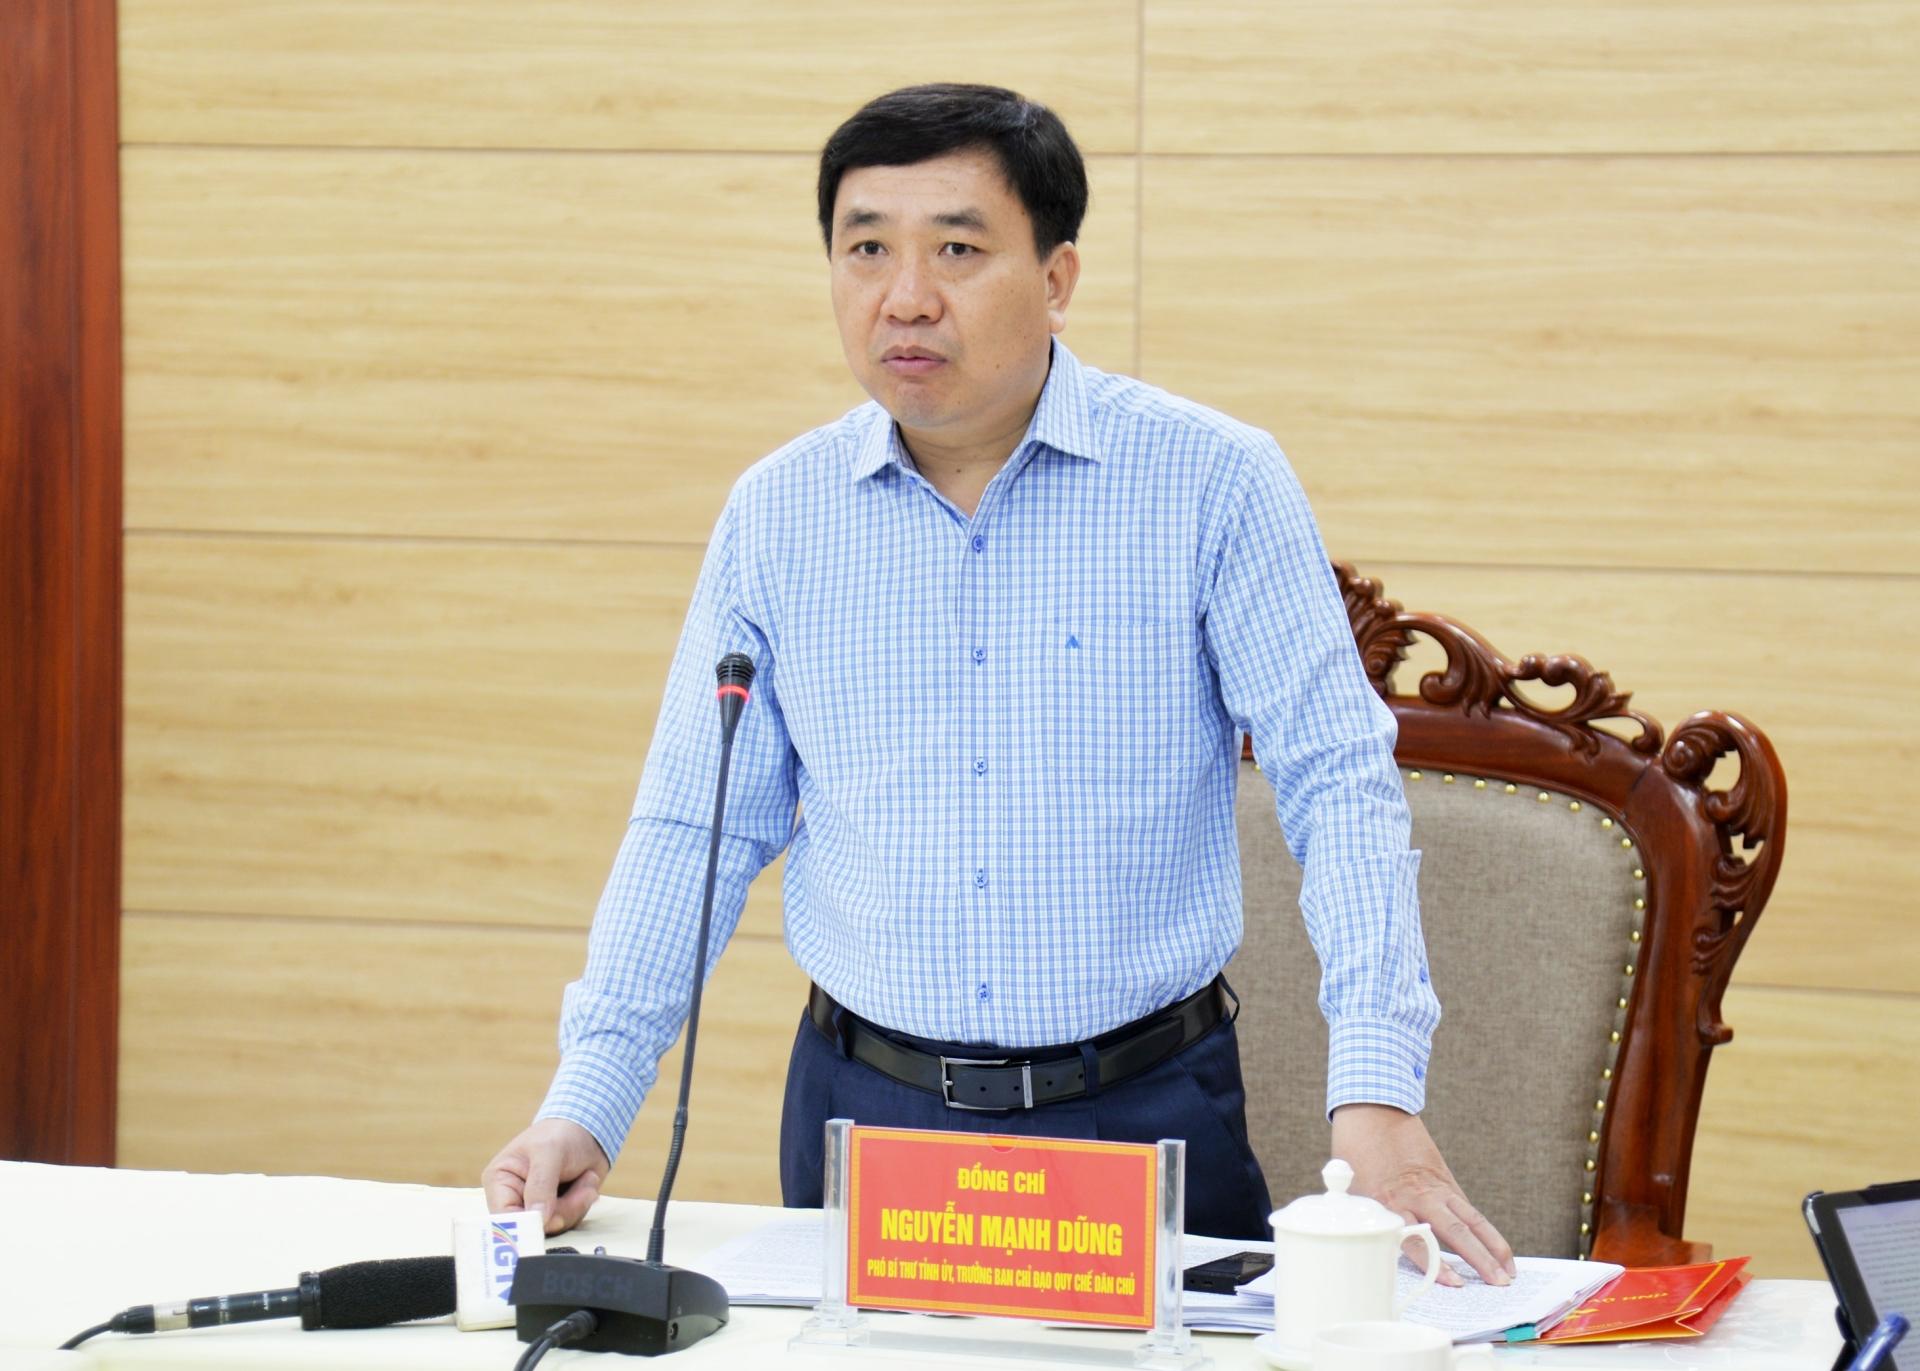 Phó Bí thư Tỉnh ủy Nguyễn Mạnh Dũng phát biểu tại buổi làm việc.